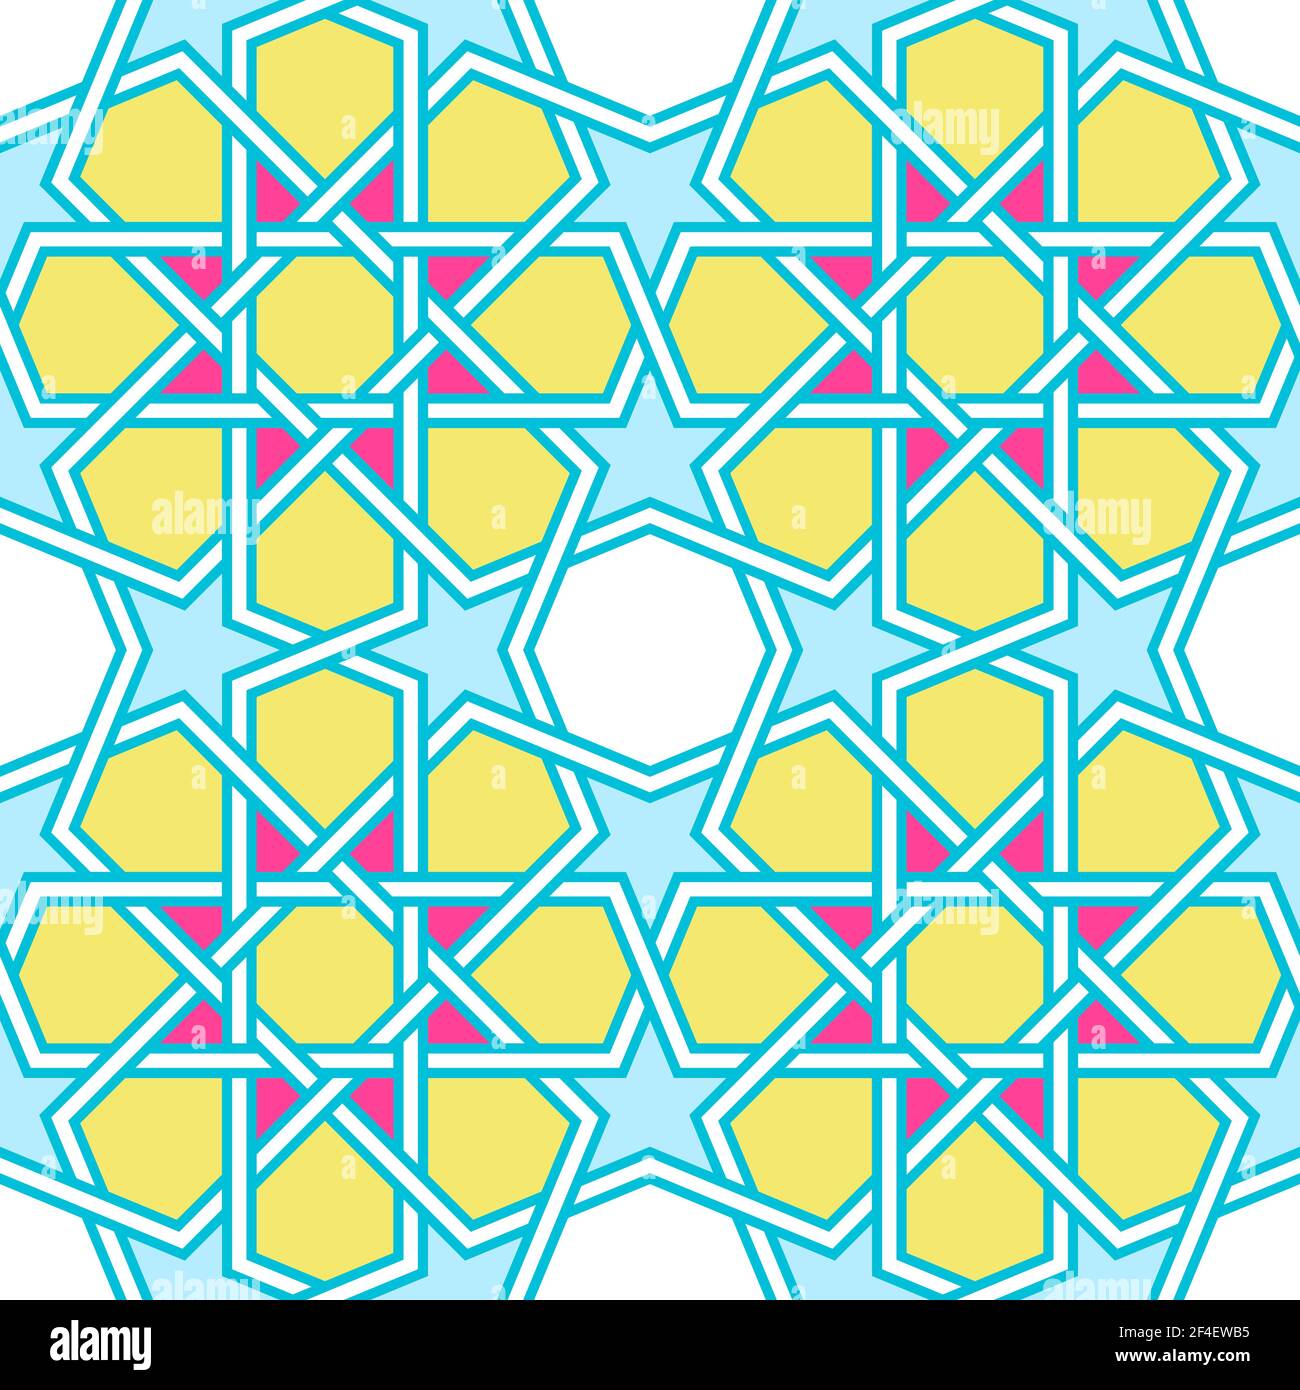 Moderno disegno di lattice intrecciato ispirato alla geometria arabica tradizionale. Motivo di sfondo vettoriale senza giunture. Colori vivaci e audaci al neon anni '80: Rosa, yell Illustrazione Vettoriale